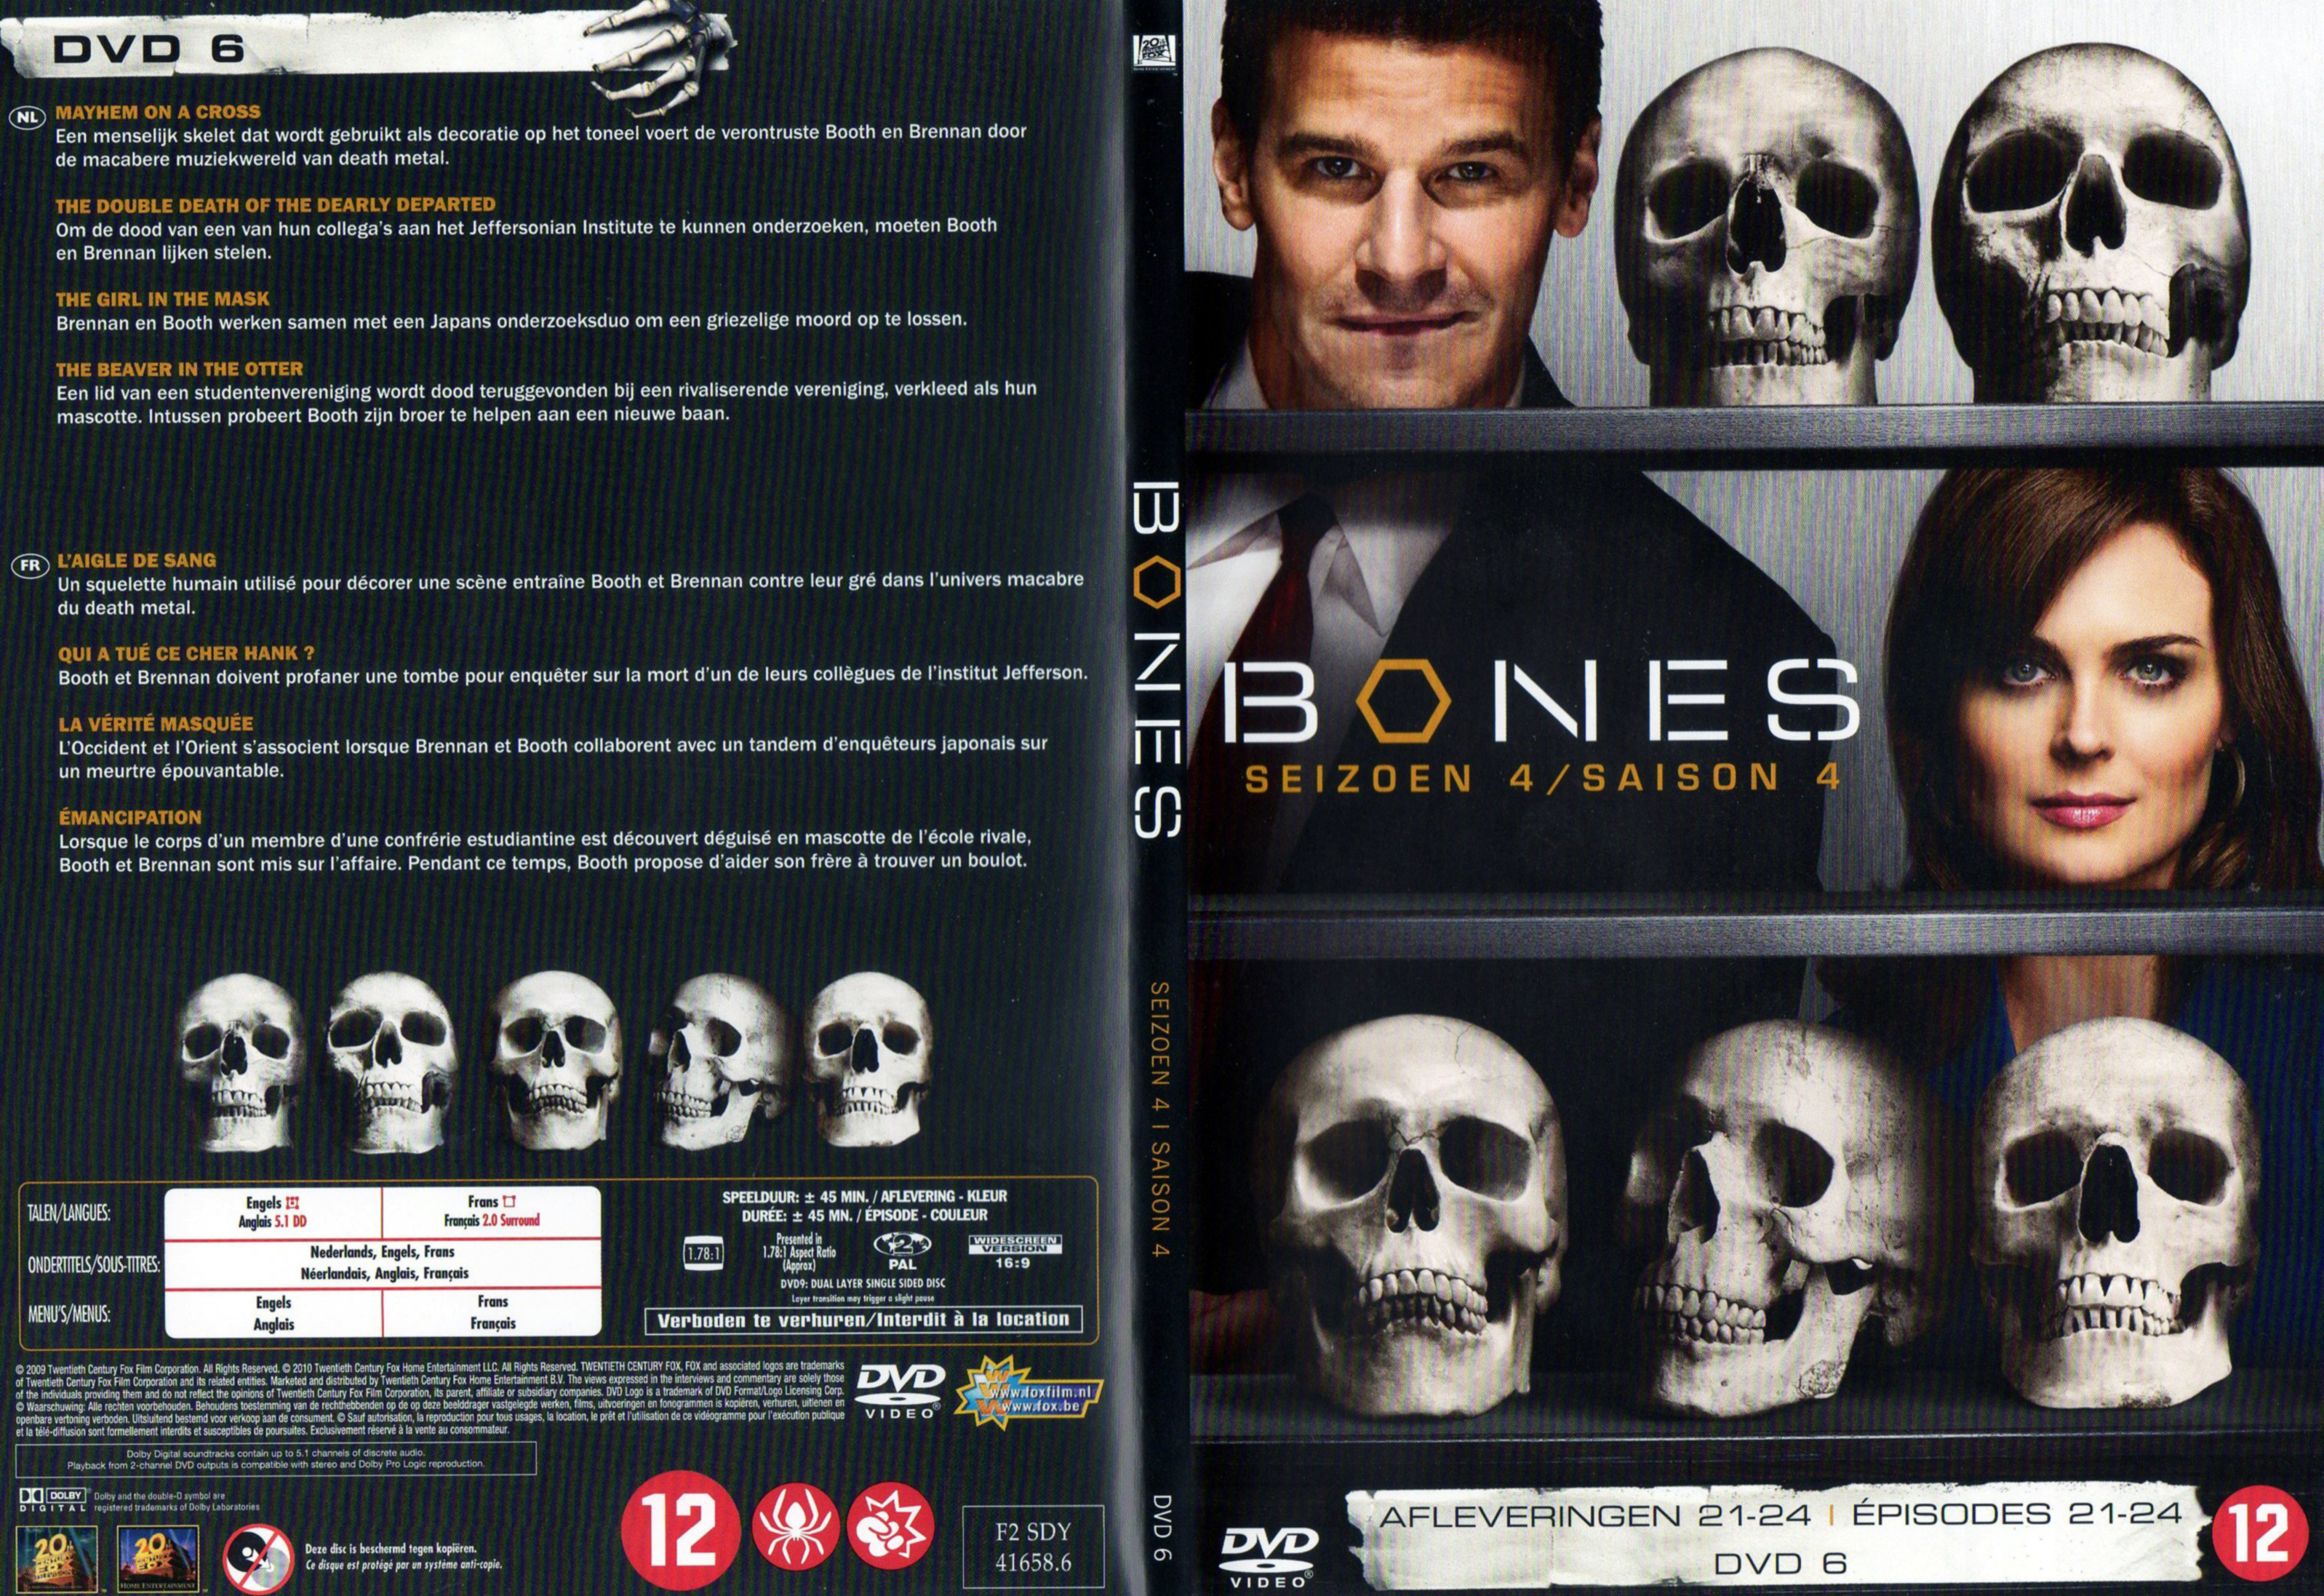 Jaquette DVD Bones Saison 4 DVD 6